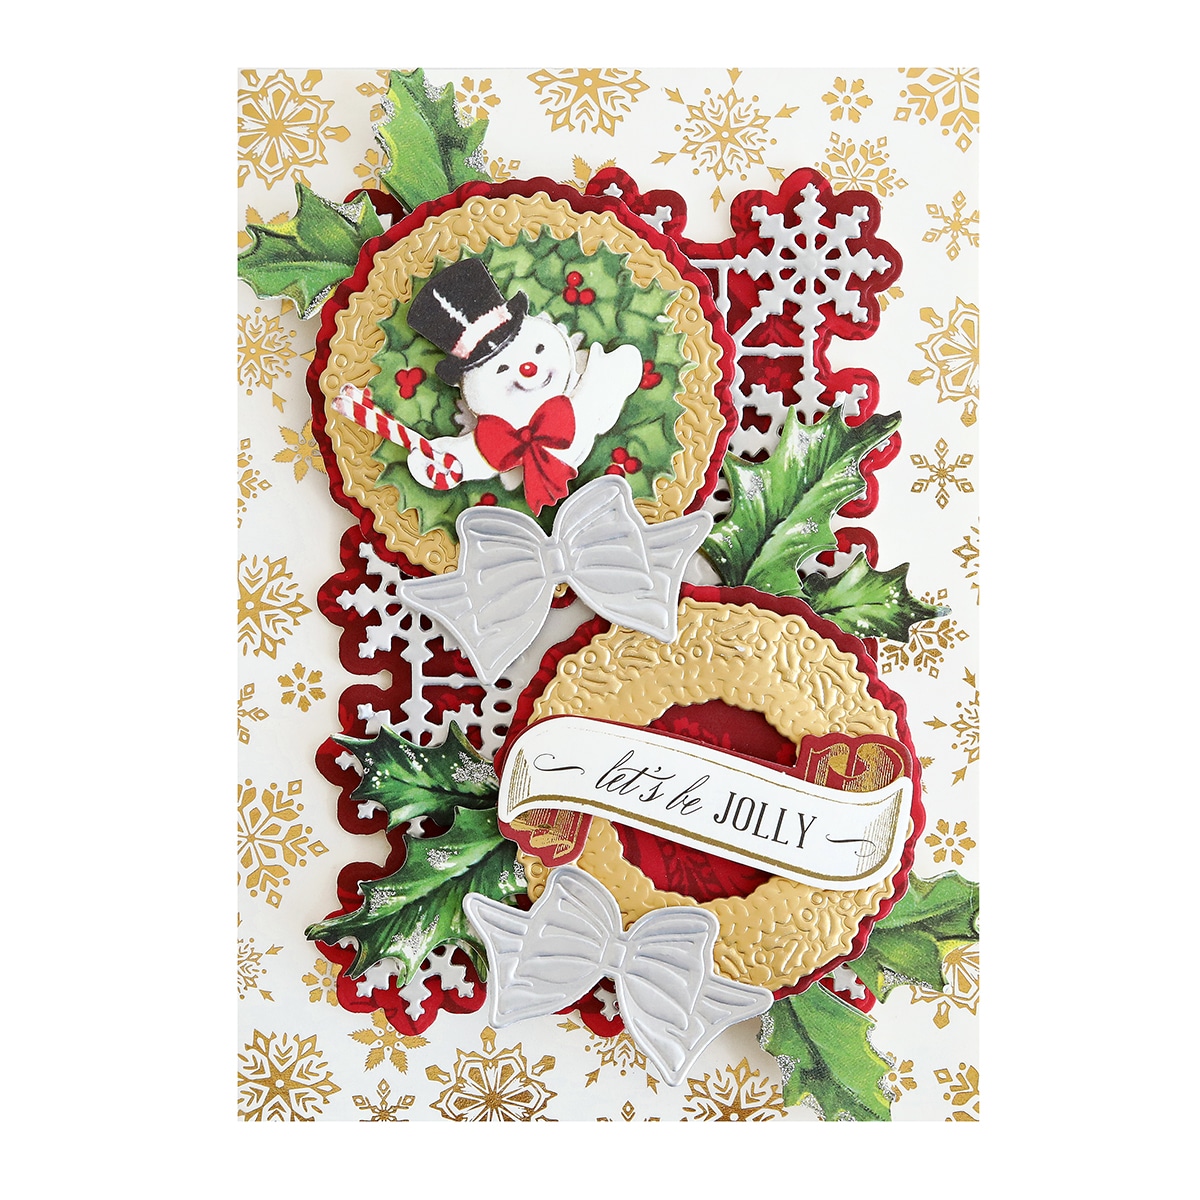 A christmas card with a snowman and holly wreath.